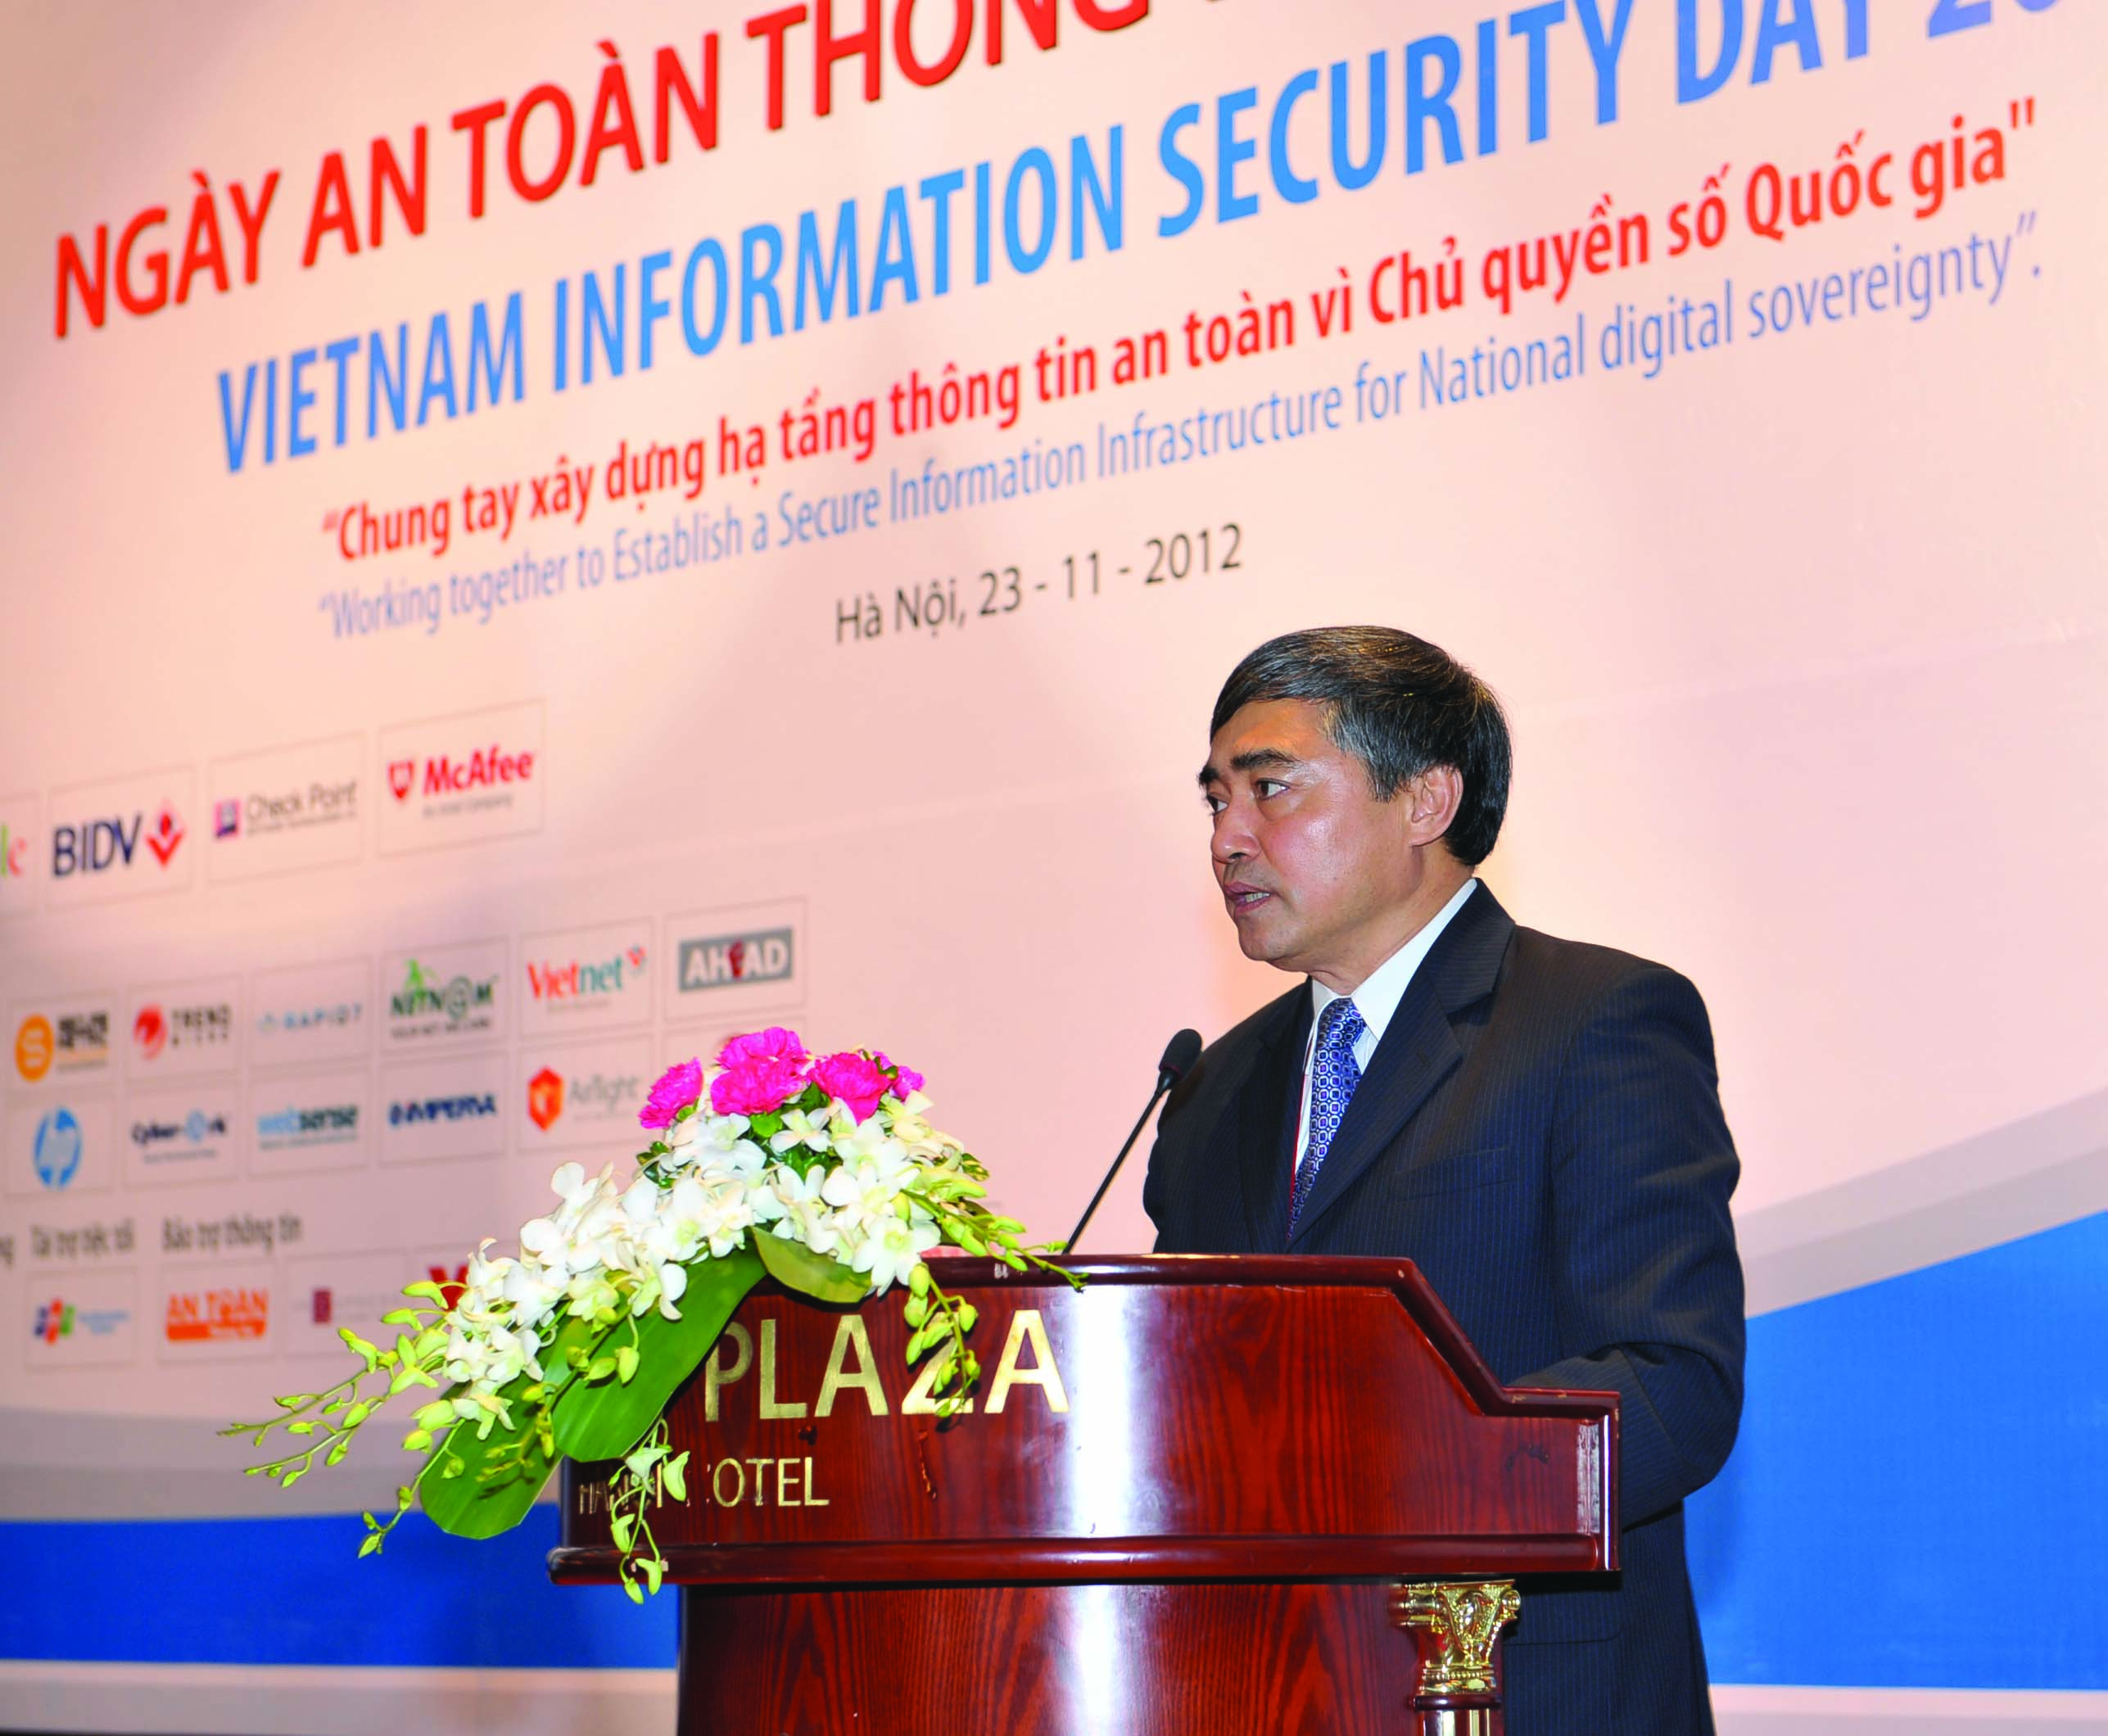 Thứ trưởng Bộ TT&TT, TS. Nguyễn Minh Hồng phát biểu chào mừng Hội thảo “Ngày An toàn thông tin 2012” tại Hà Nội